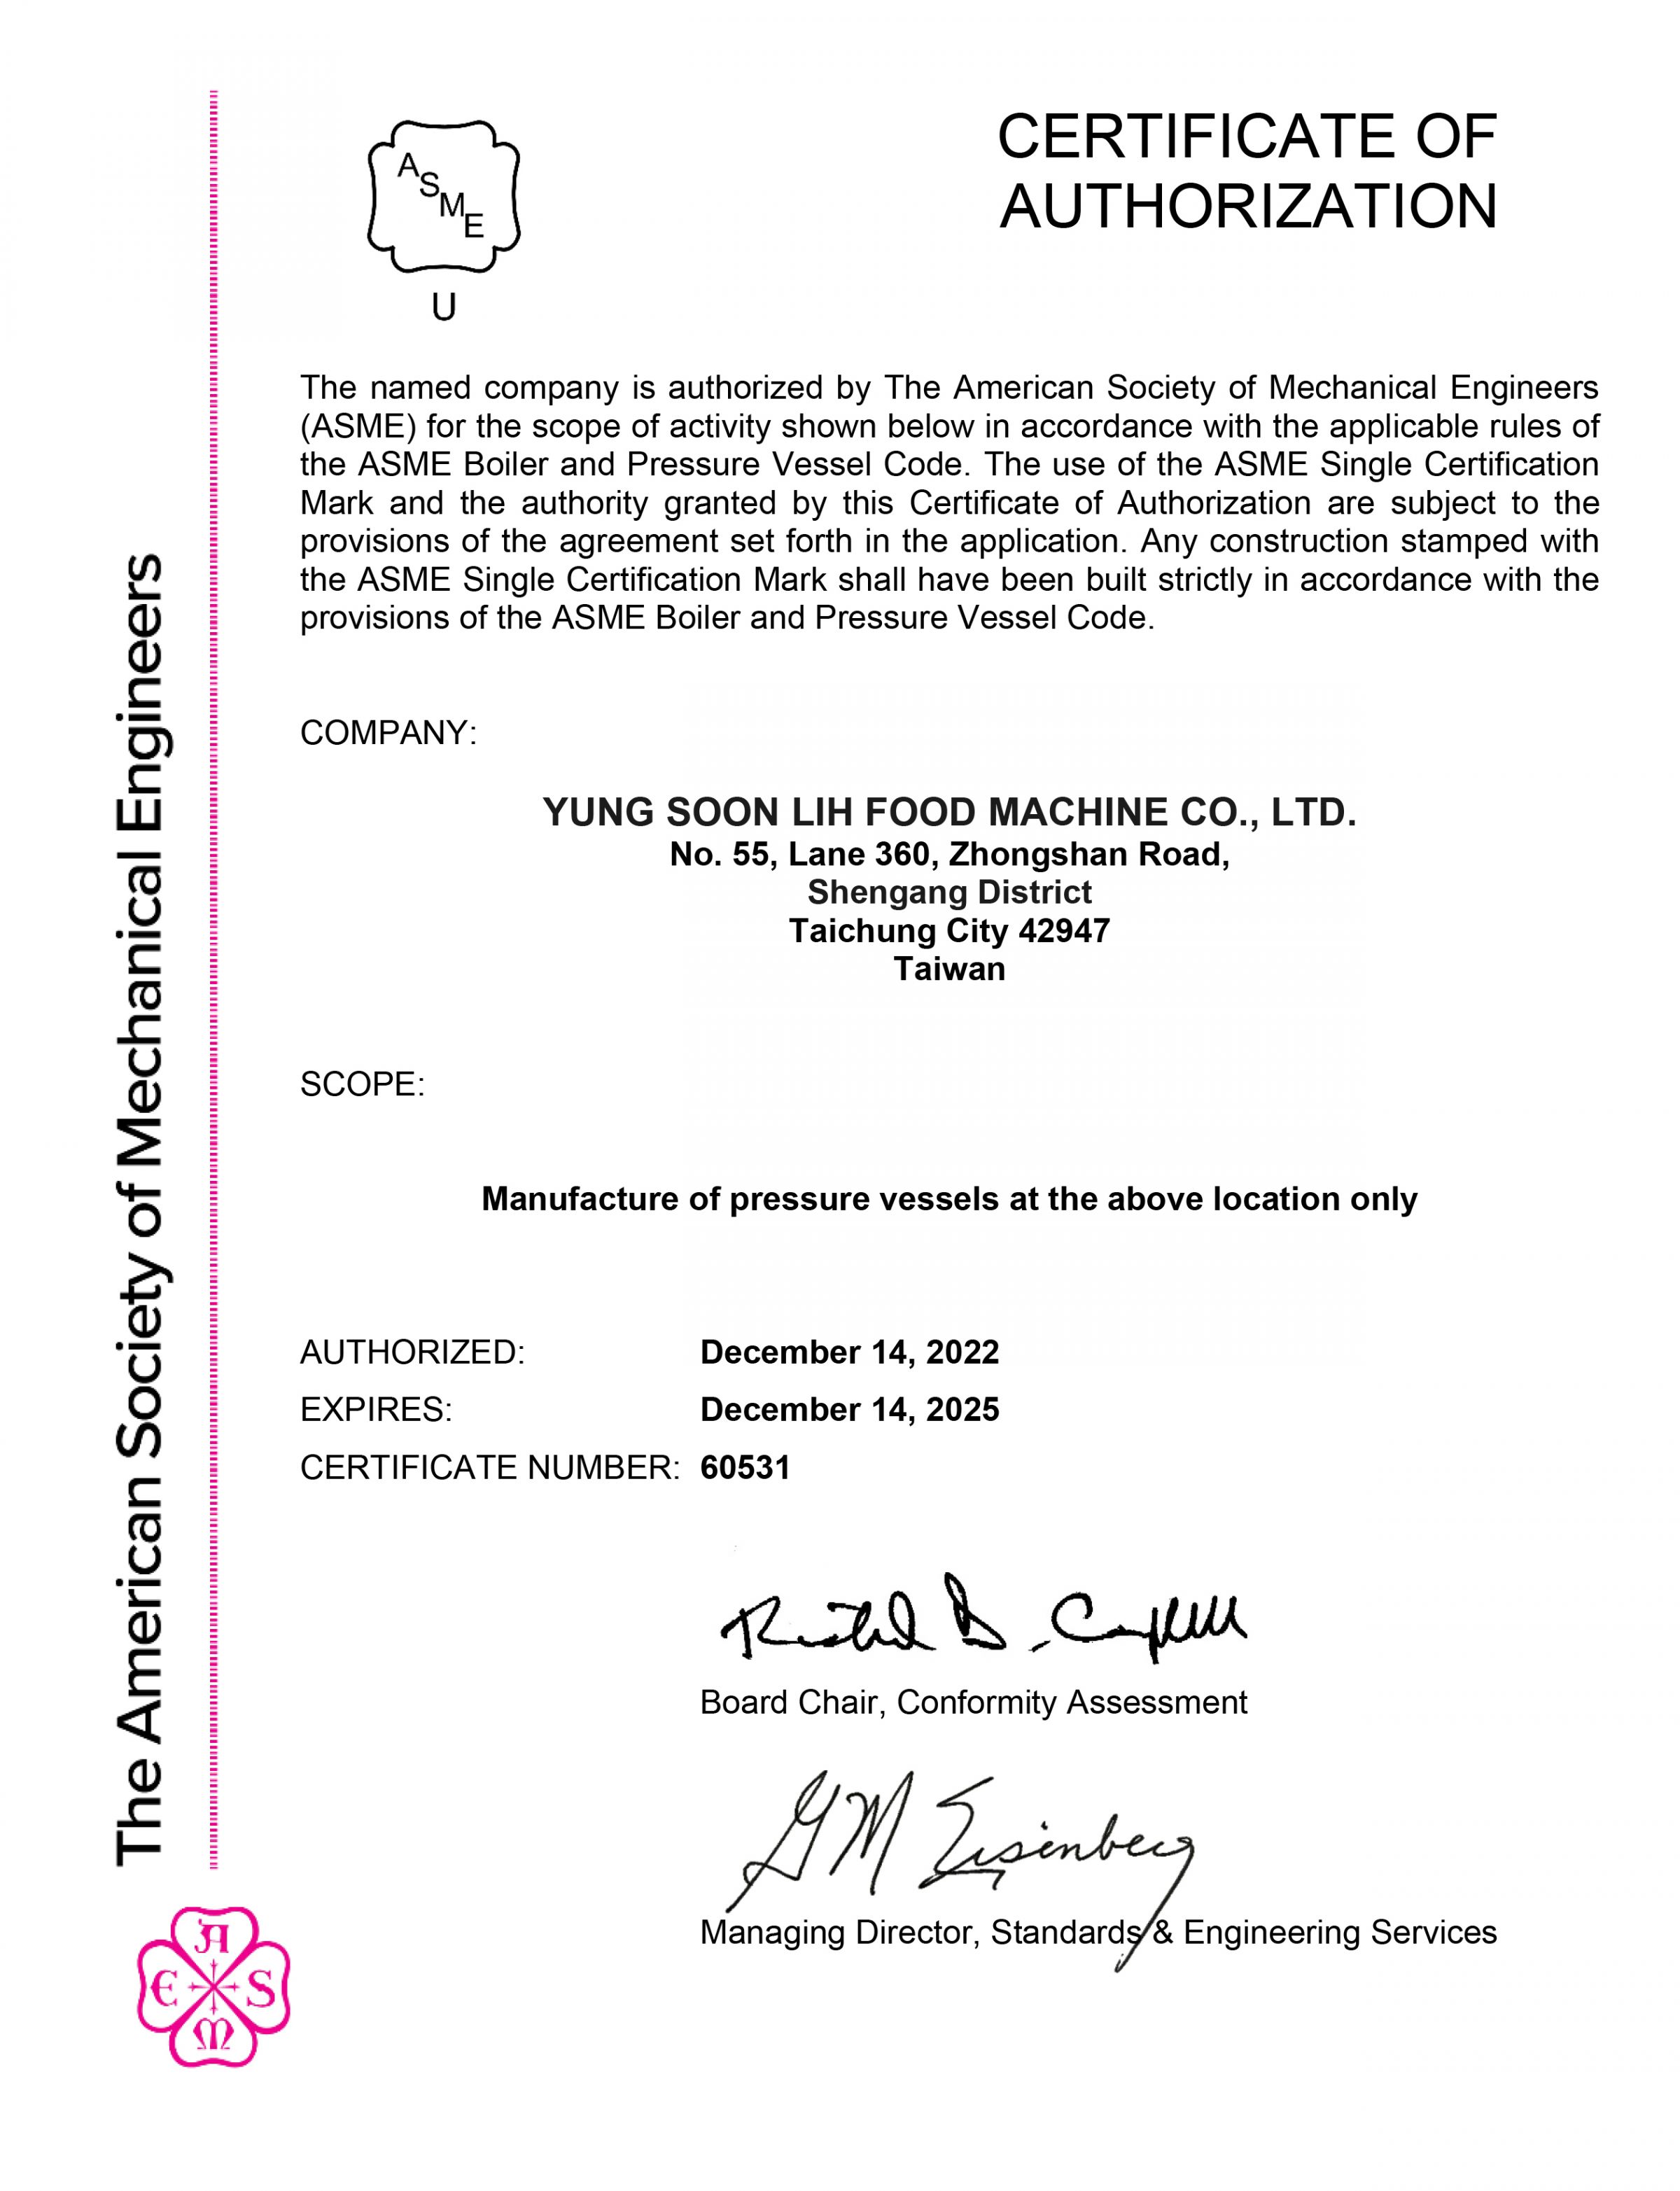 Yung Soon Lih Food Machinehat die internationale ASME U-Zertifizierungsberechtigung "notwendig für die Entwicklung von Überseemärkten" erhalten!